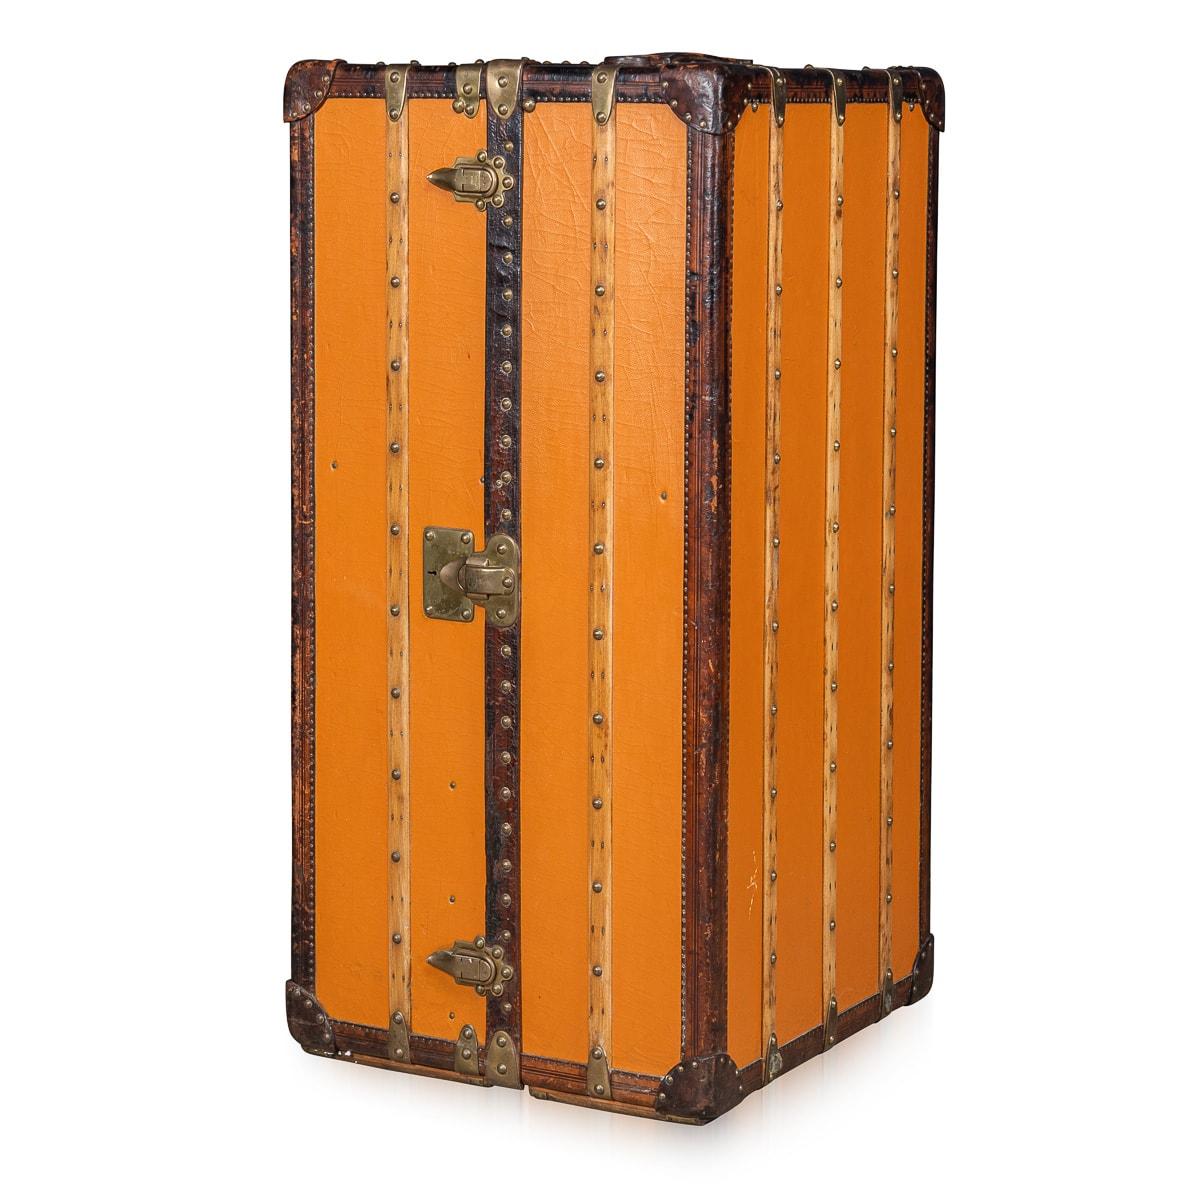 Treten Sie ein in das Reich des Vintage-Luxus mit dieser außergewöhnlich seltenen Garderobentruhe von Louis Vuitton, die aus dem frühen 20. Jahrhundert stammt, etwa 1900-1910. Dieser vertikale Koffer aus dem charakteristischen orangefarbenen